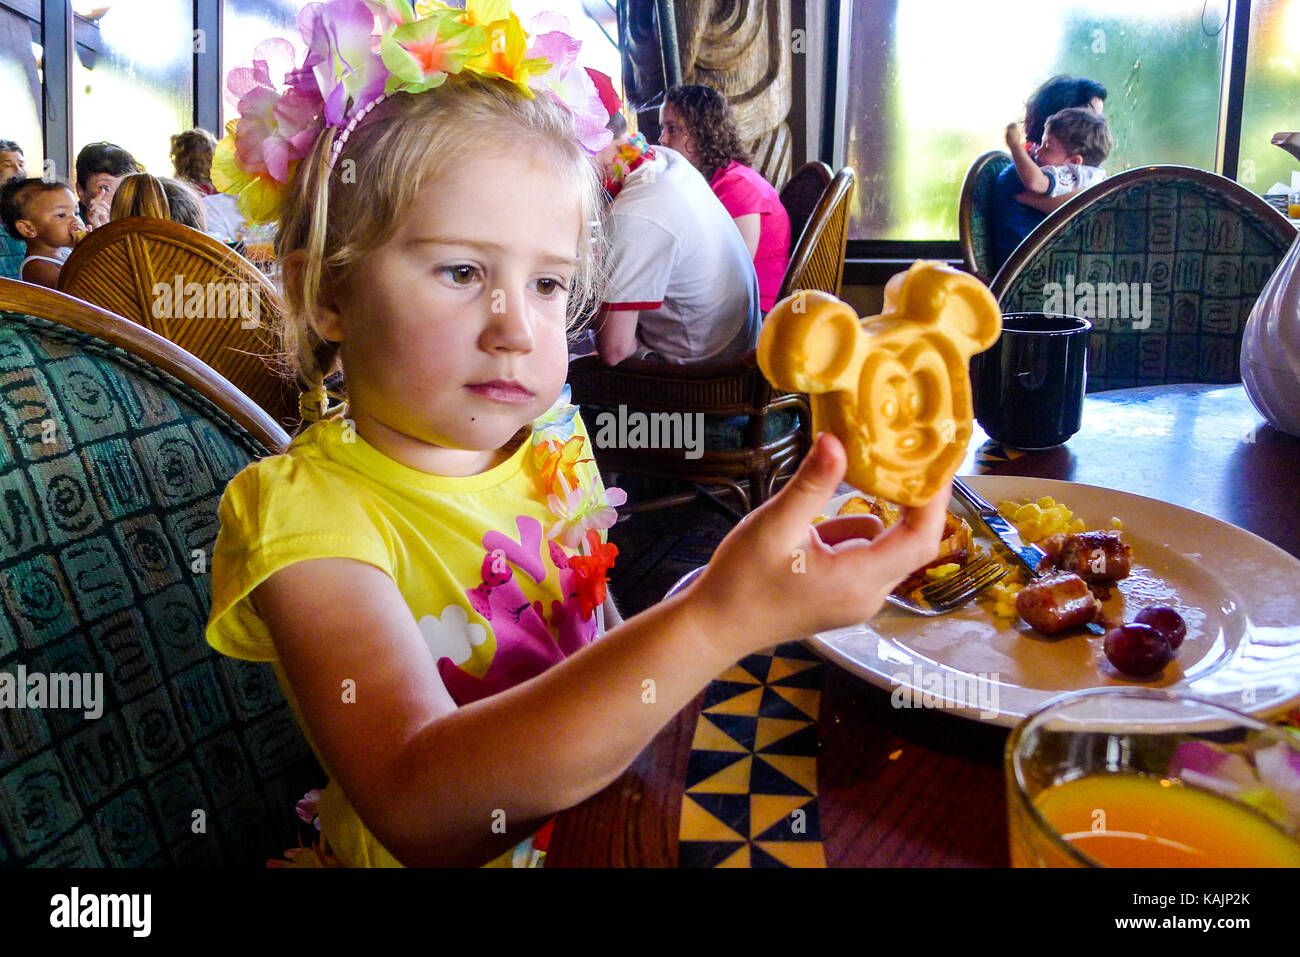 Kind mit einem Mickey Maus Waffeleisen in Disney World Florida, USA  Stockfotografie - Alamy